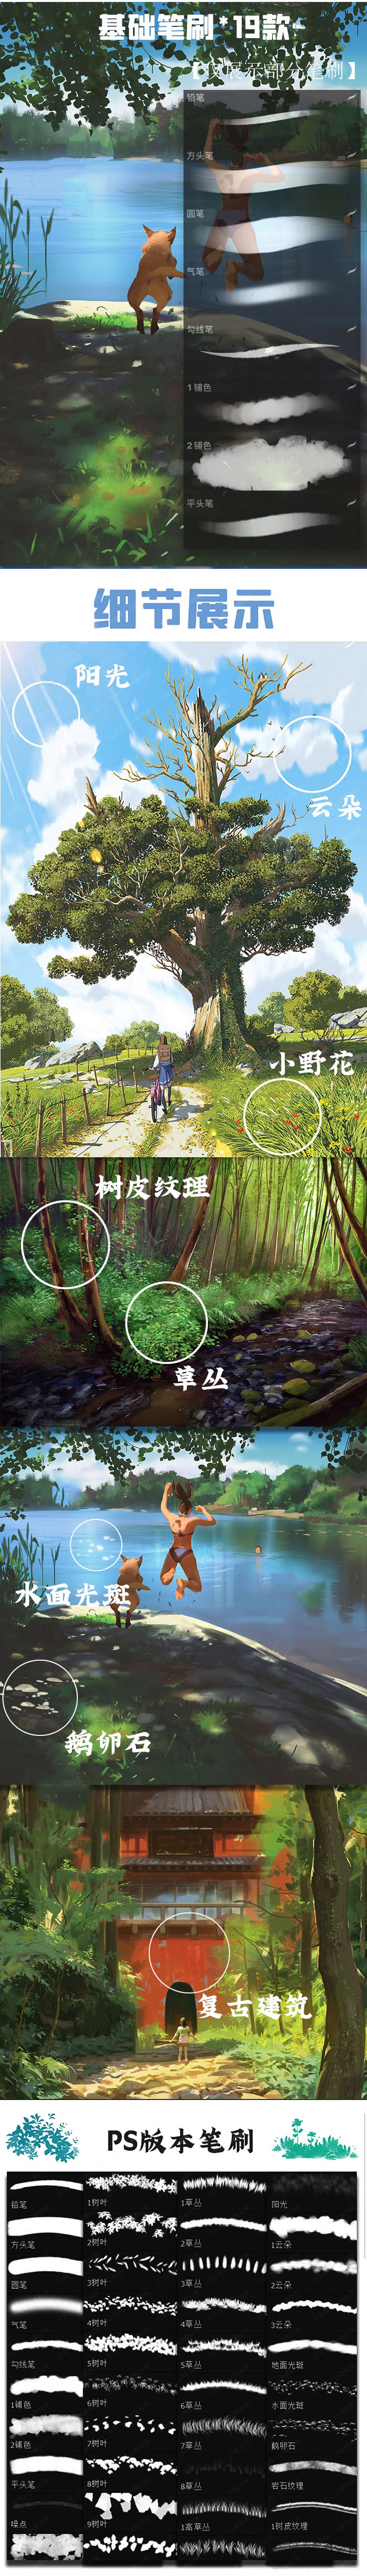 宫崎骏日漫风景PS+Procreat笔刷素材合集，太喜欢了 笔刷资源 第3张